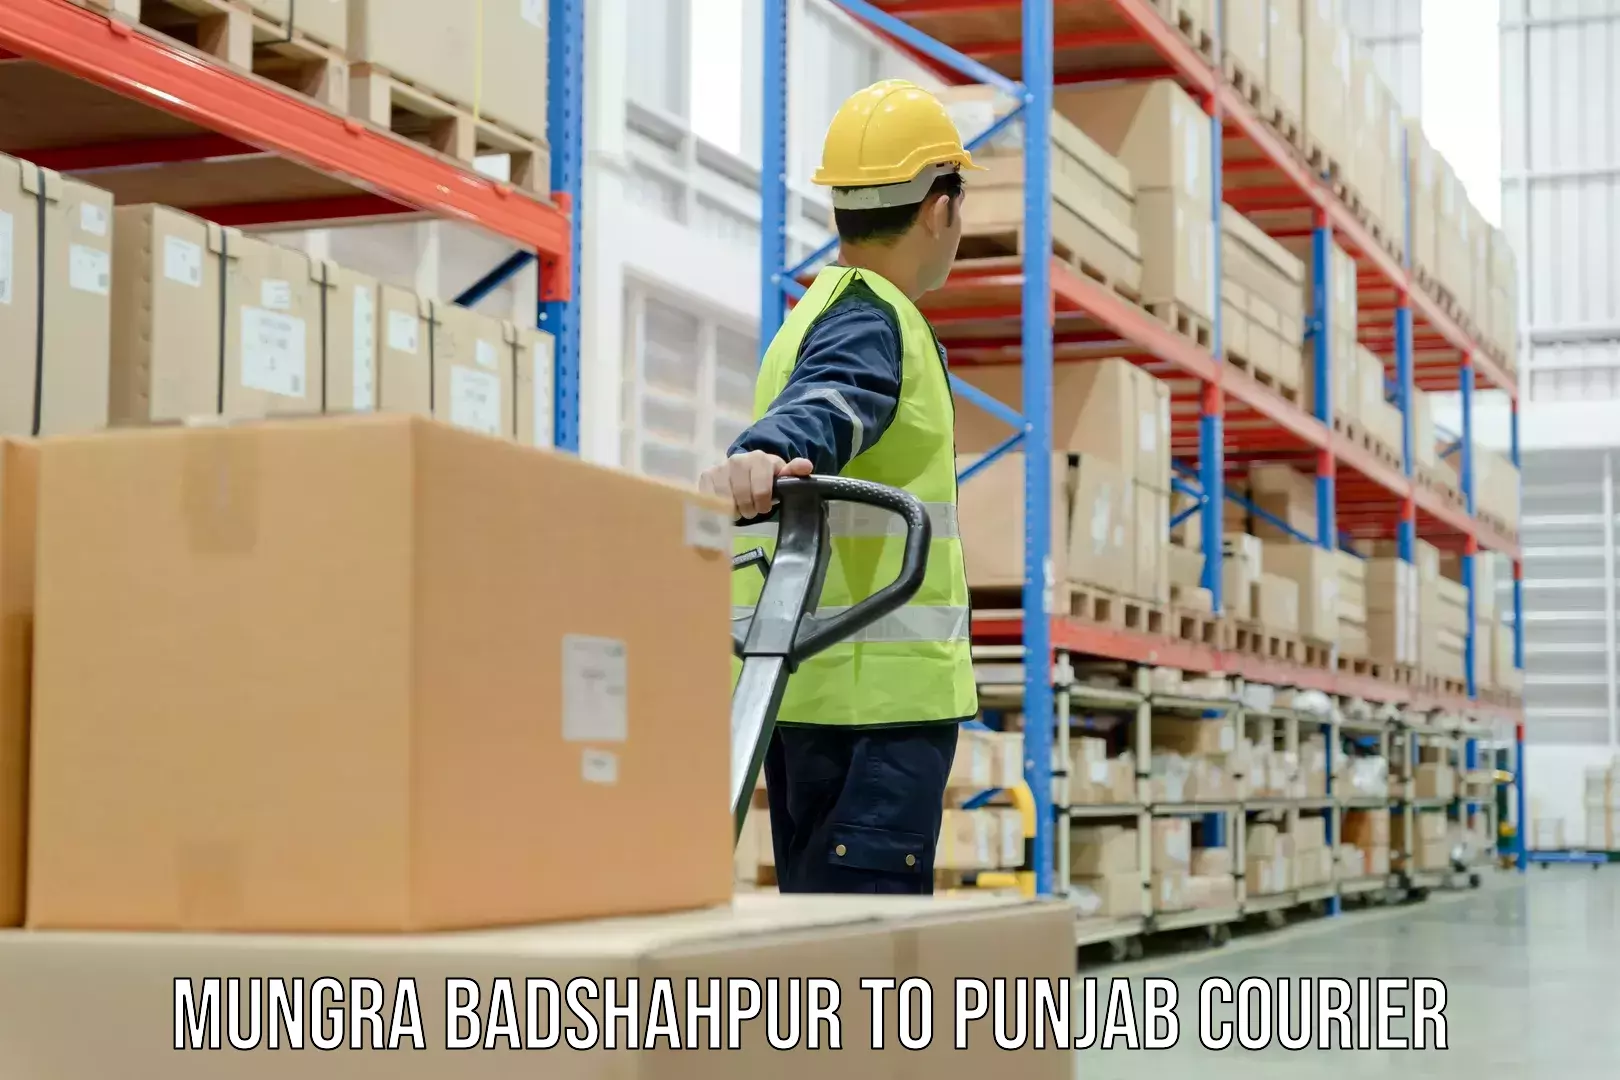 Reliable courier services Mungra Badshahpur to Patiala